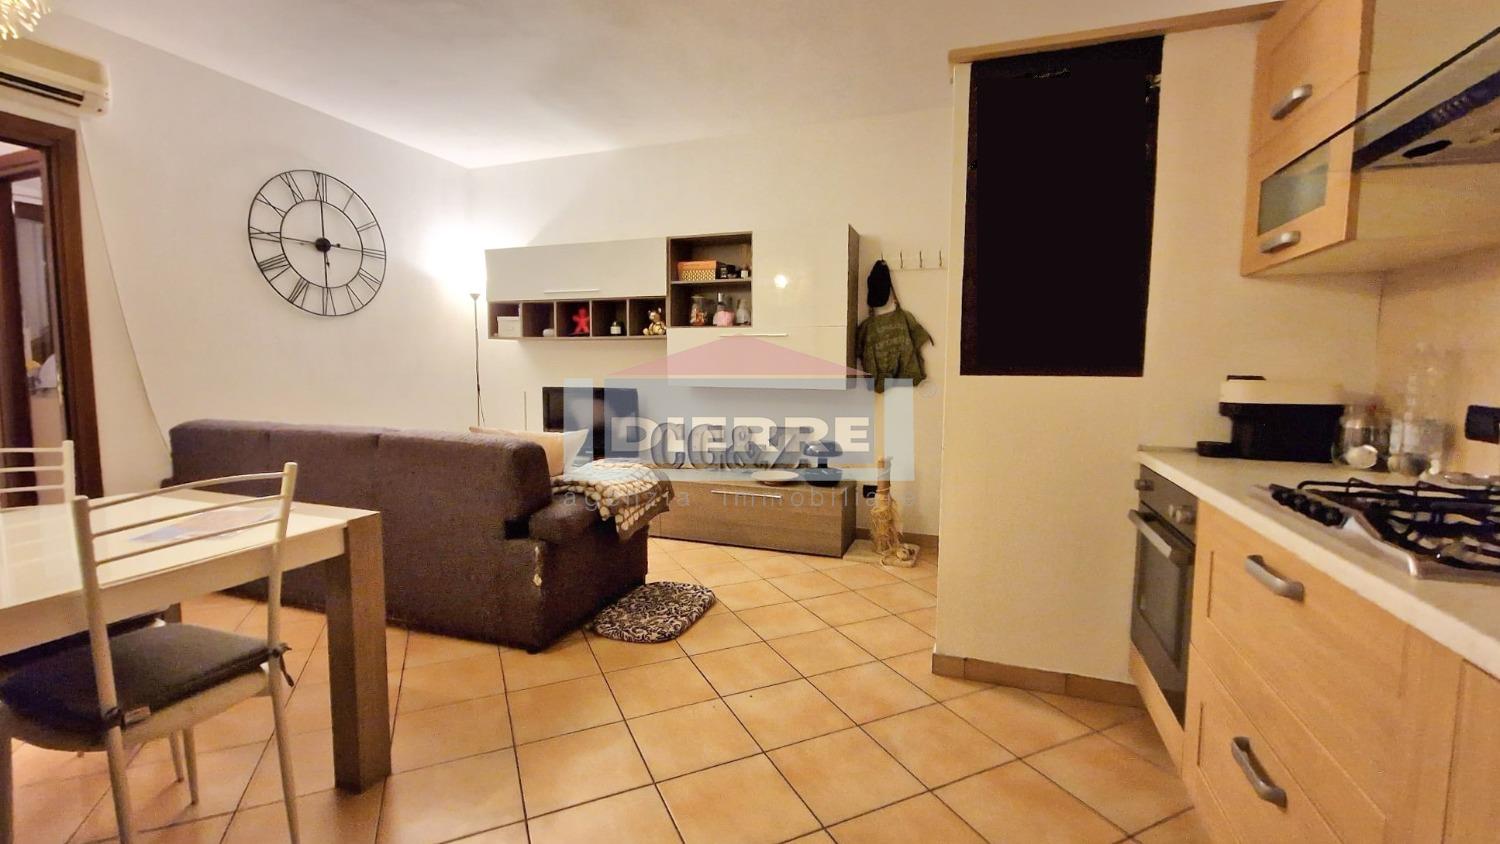 Appartamento in vendita a Carpi, 3 locali, prezzo € 160.000 | PortaleAgenzieImmobiliari.it